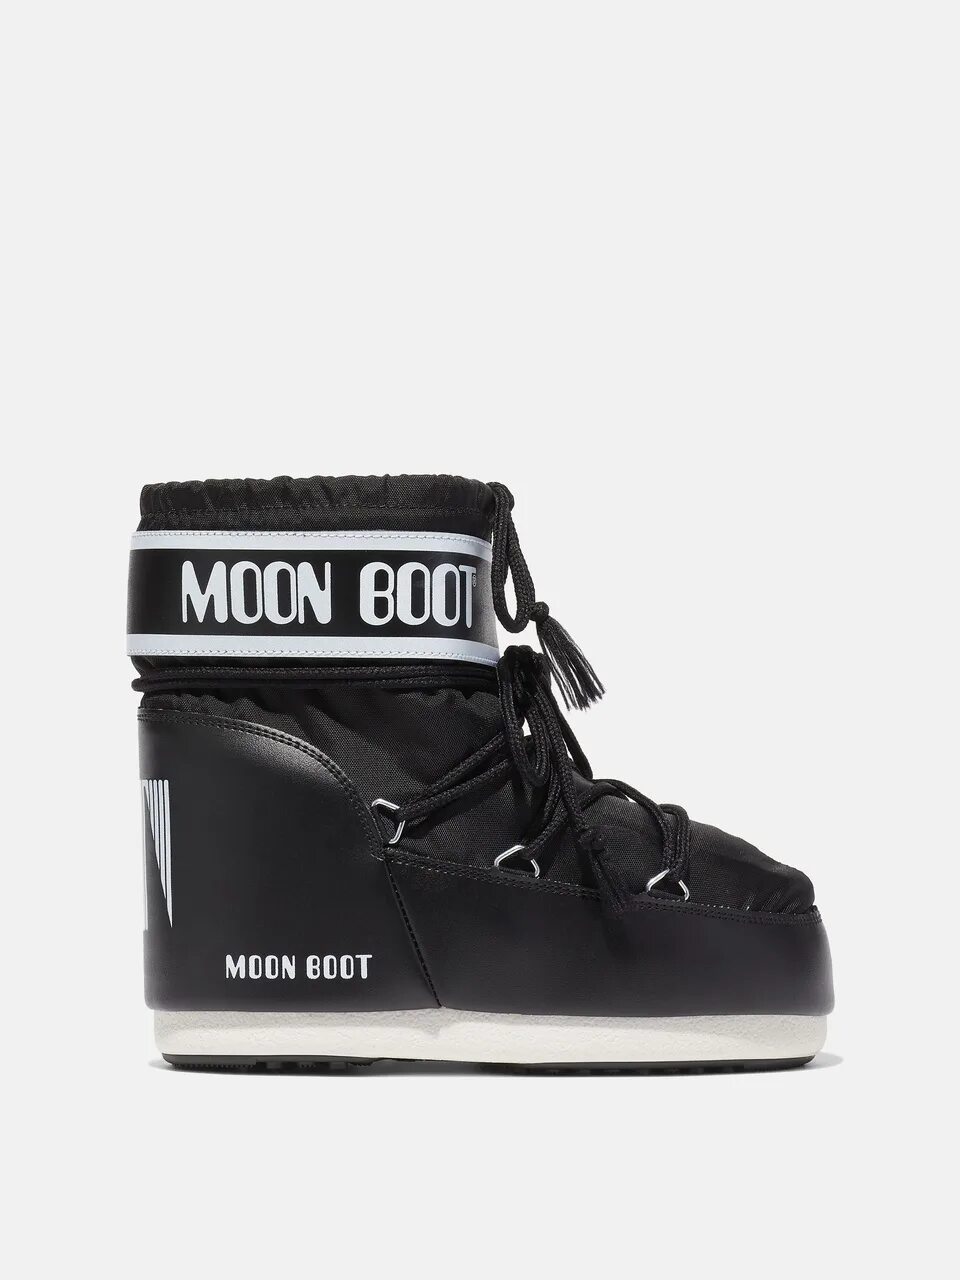 Муны обувь. Nike Moon Boot. Мун бут. Moon Boot мужские. Дутики Мун бут.